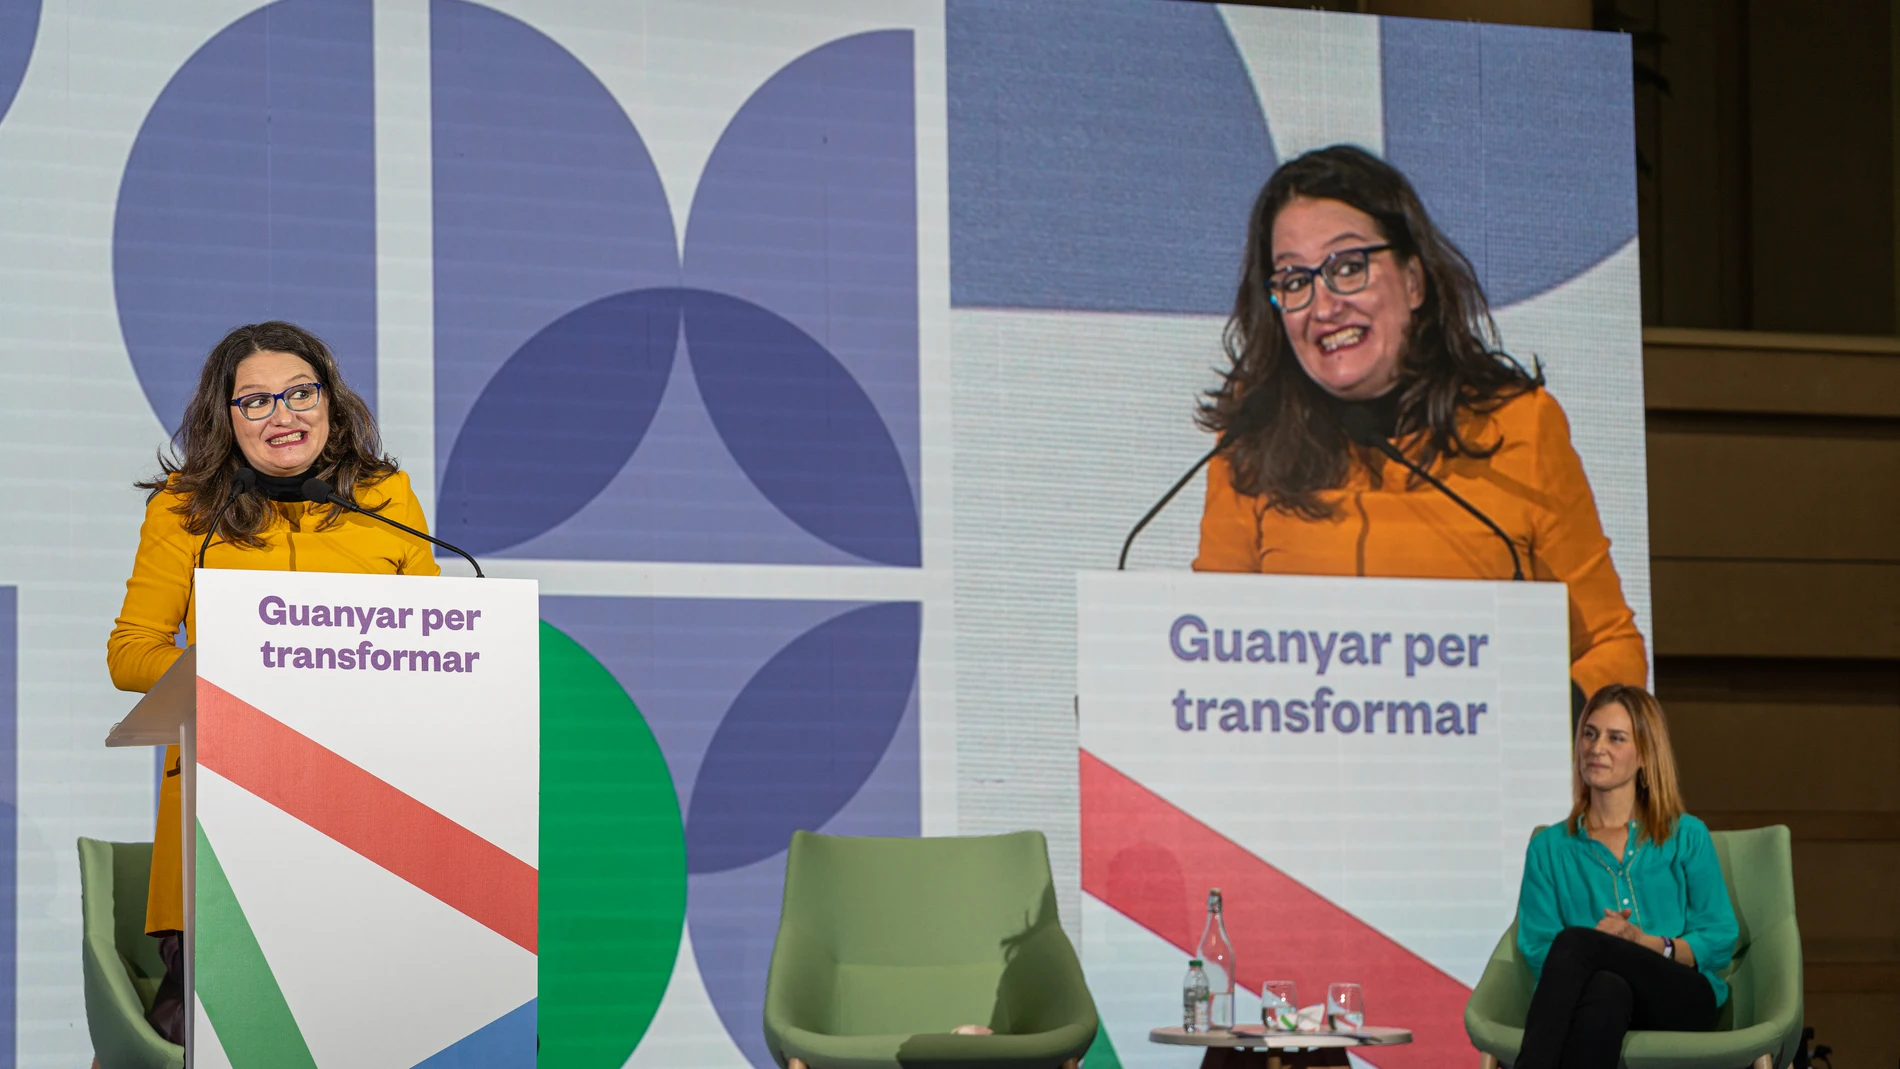 La vicepresidenta de la Generalitat Valenciana, Mónica Oltra (i), y la líder de los comuns en el Parlament, Jéssica Albiach (d), en la III Assemblea Nacional de los comuns, a 21 de noviembre de 2021, en BarcelonaPau Venteo / Europa Press21/11/2021